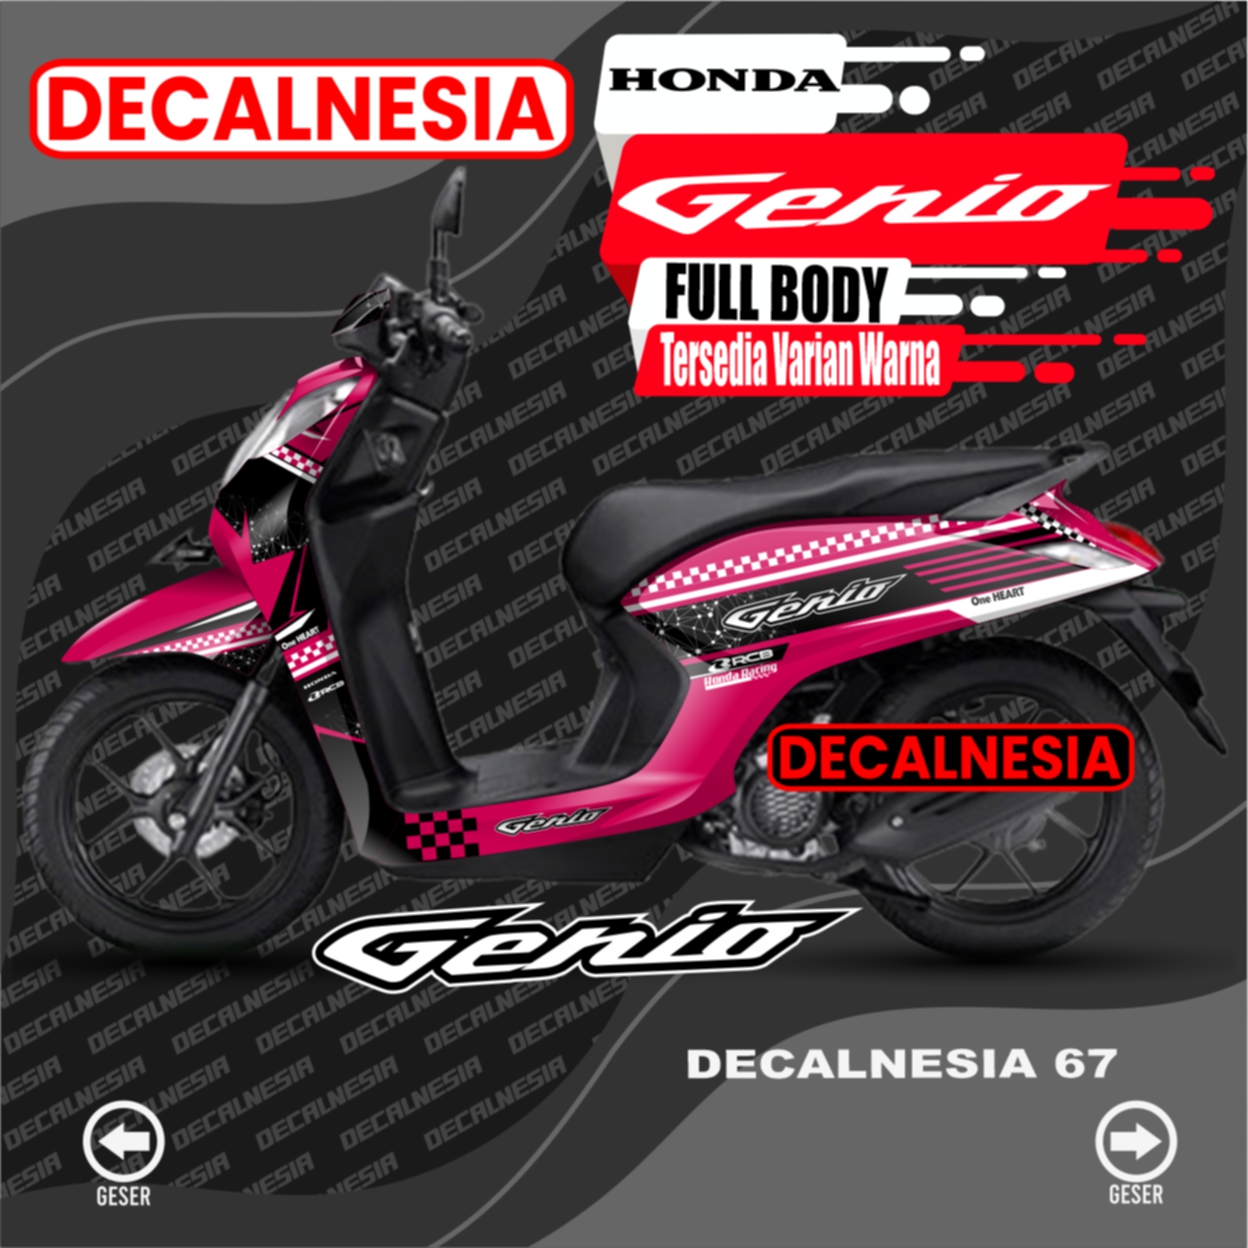 Decal Stiker Motor Honda Genio Decal Genio Stiker Genio Variasi Aksesoris Modifikasi Sticker Genio Full Body Lazada Indonesia